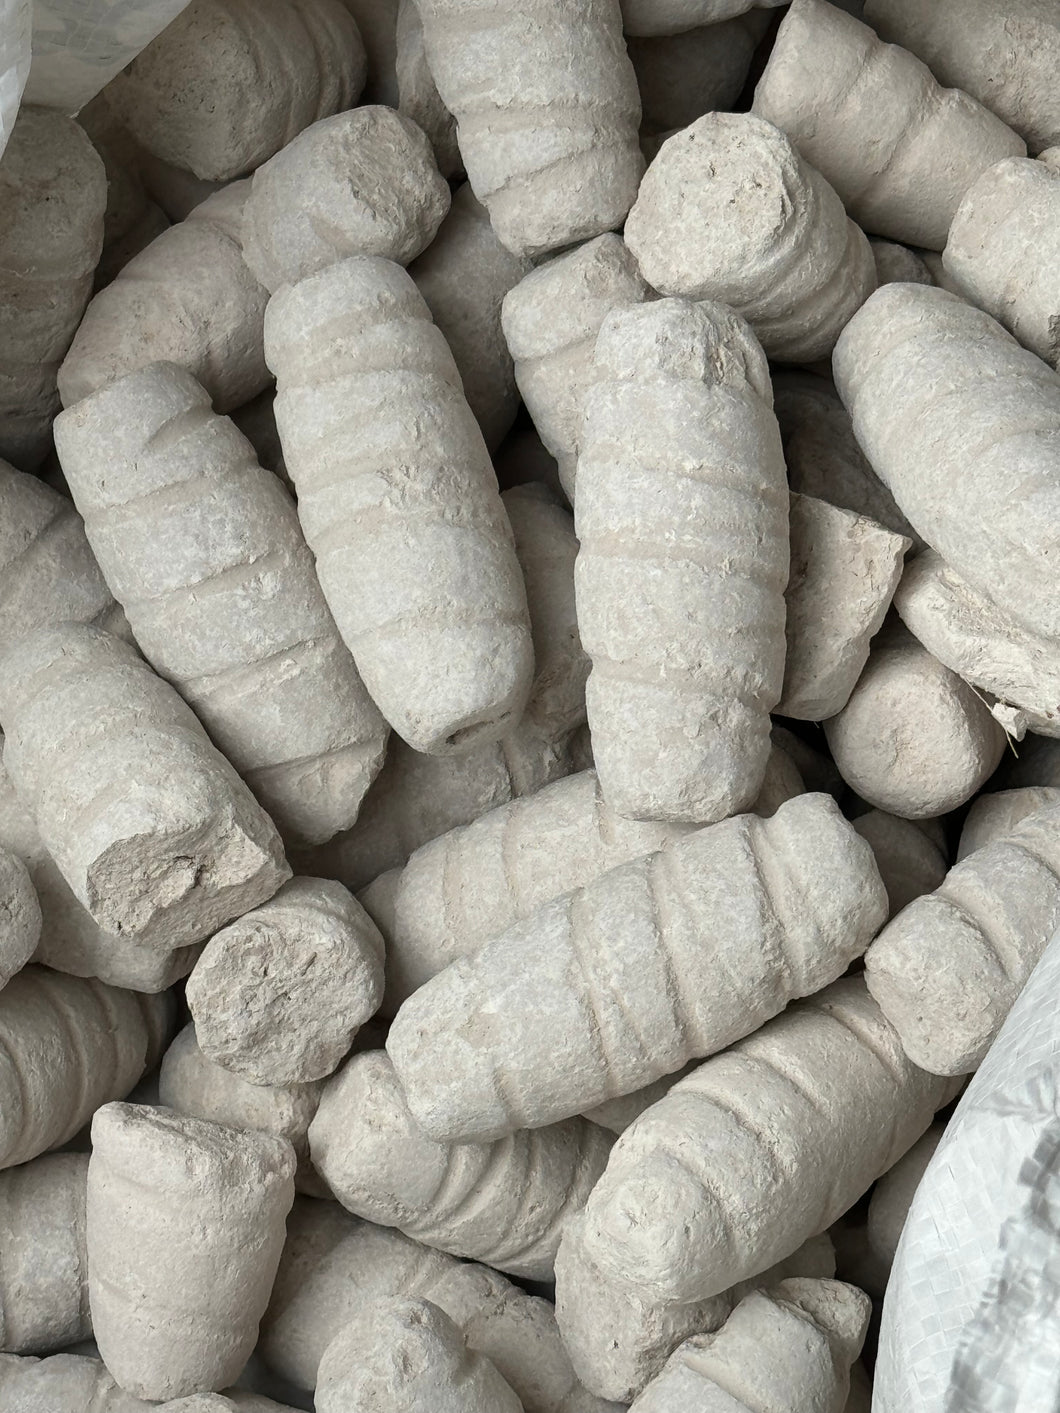 Purelyagro Efun Edible Clay Bentonite Kaolin Calaba - Imported from Nigeria